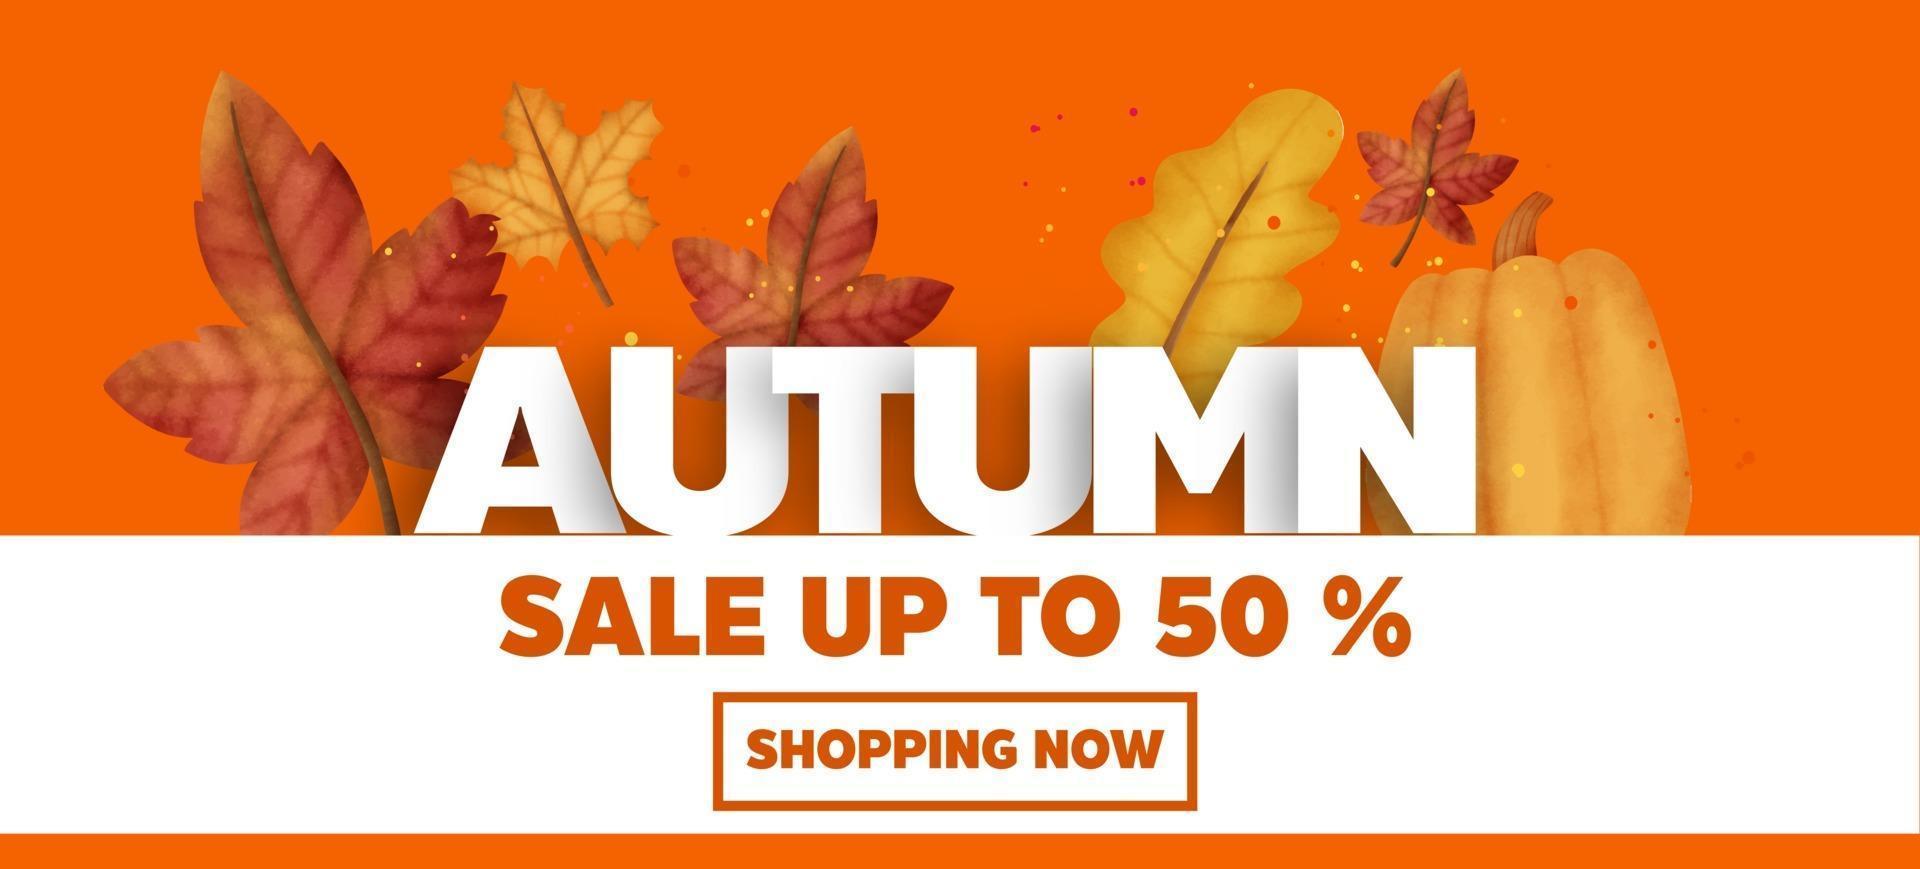 banner de venta de otoño vector